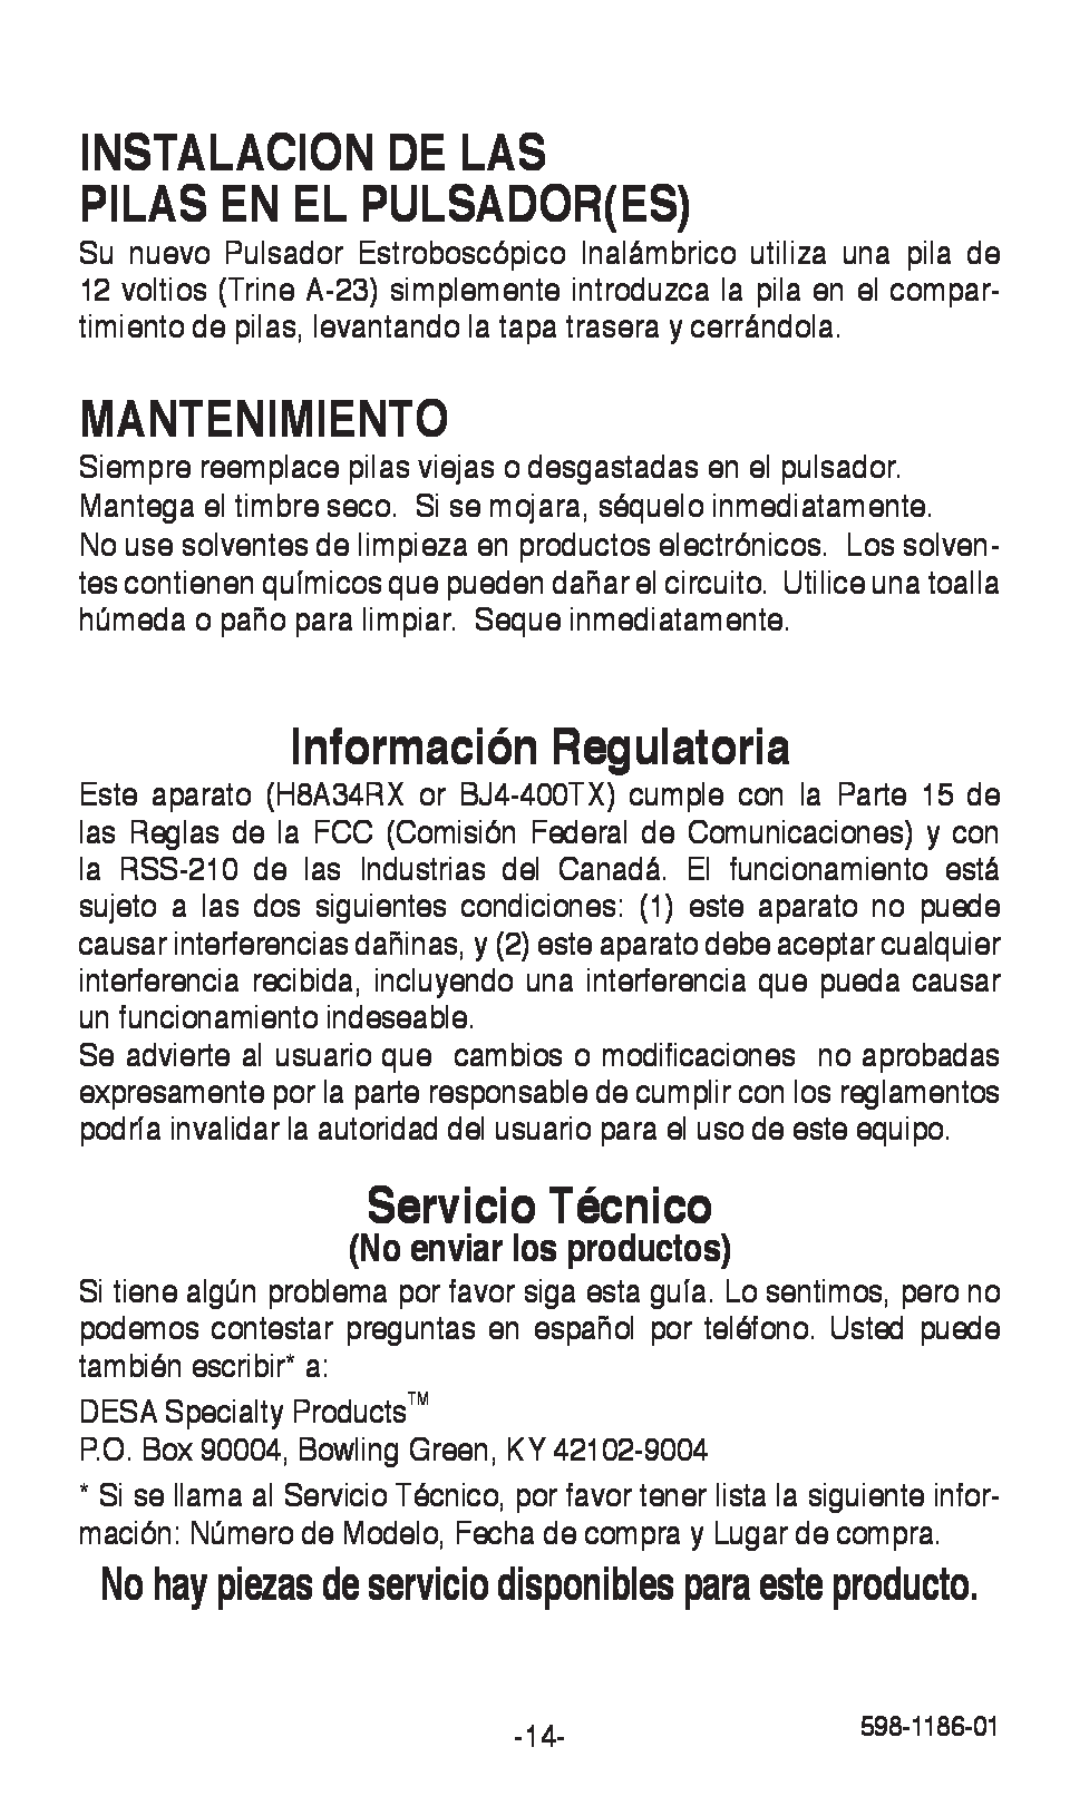 Desa 598-1186-01 Instalacion De Las Pilas En El Pulsadores, Mantenimiento, Información Regulatoria, Servicio Técnico 